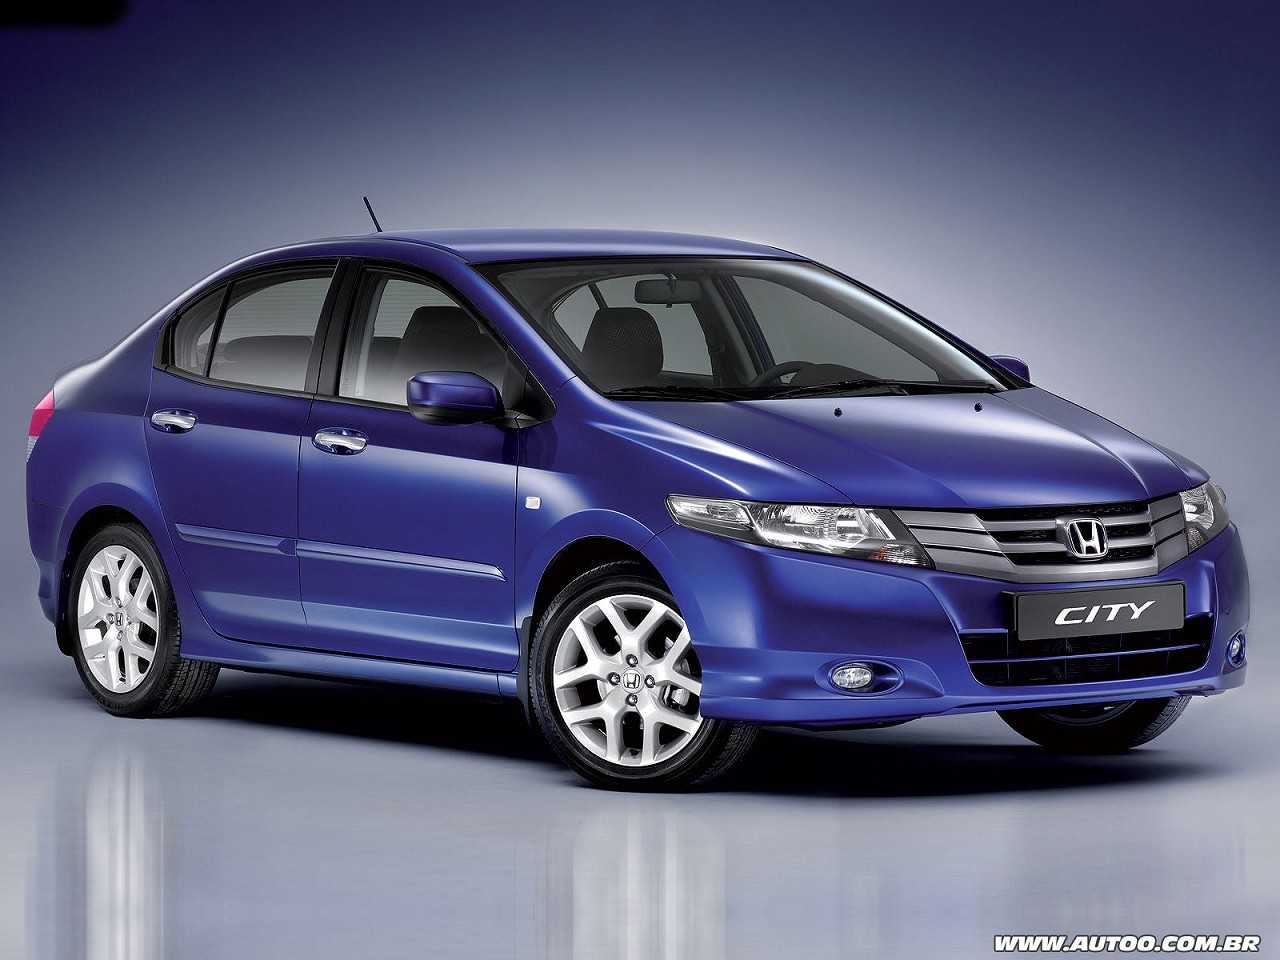 Devo optar por um Honda City 2012 ou um sedã compacto mais novo até R$ 35.000?